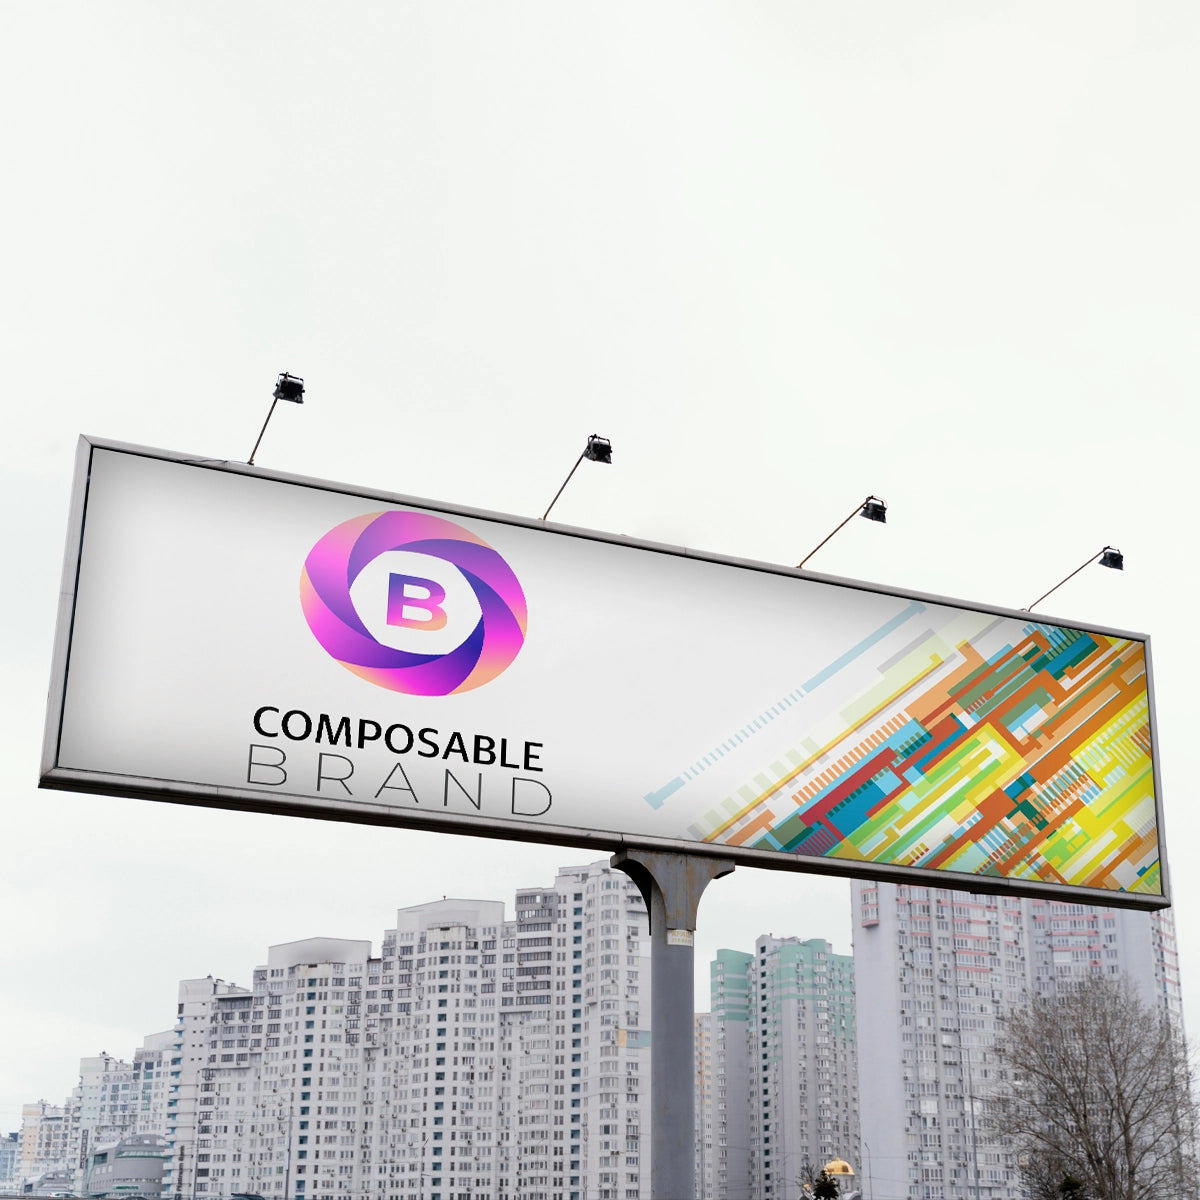 ComposableBrand.com